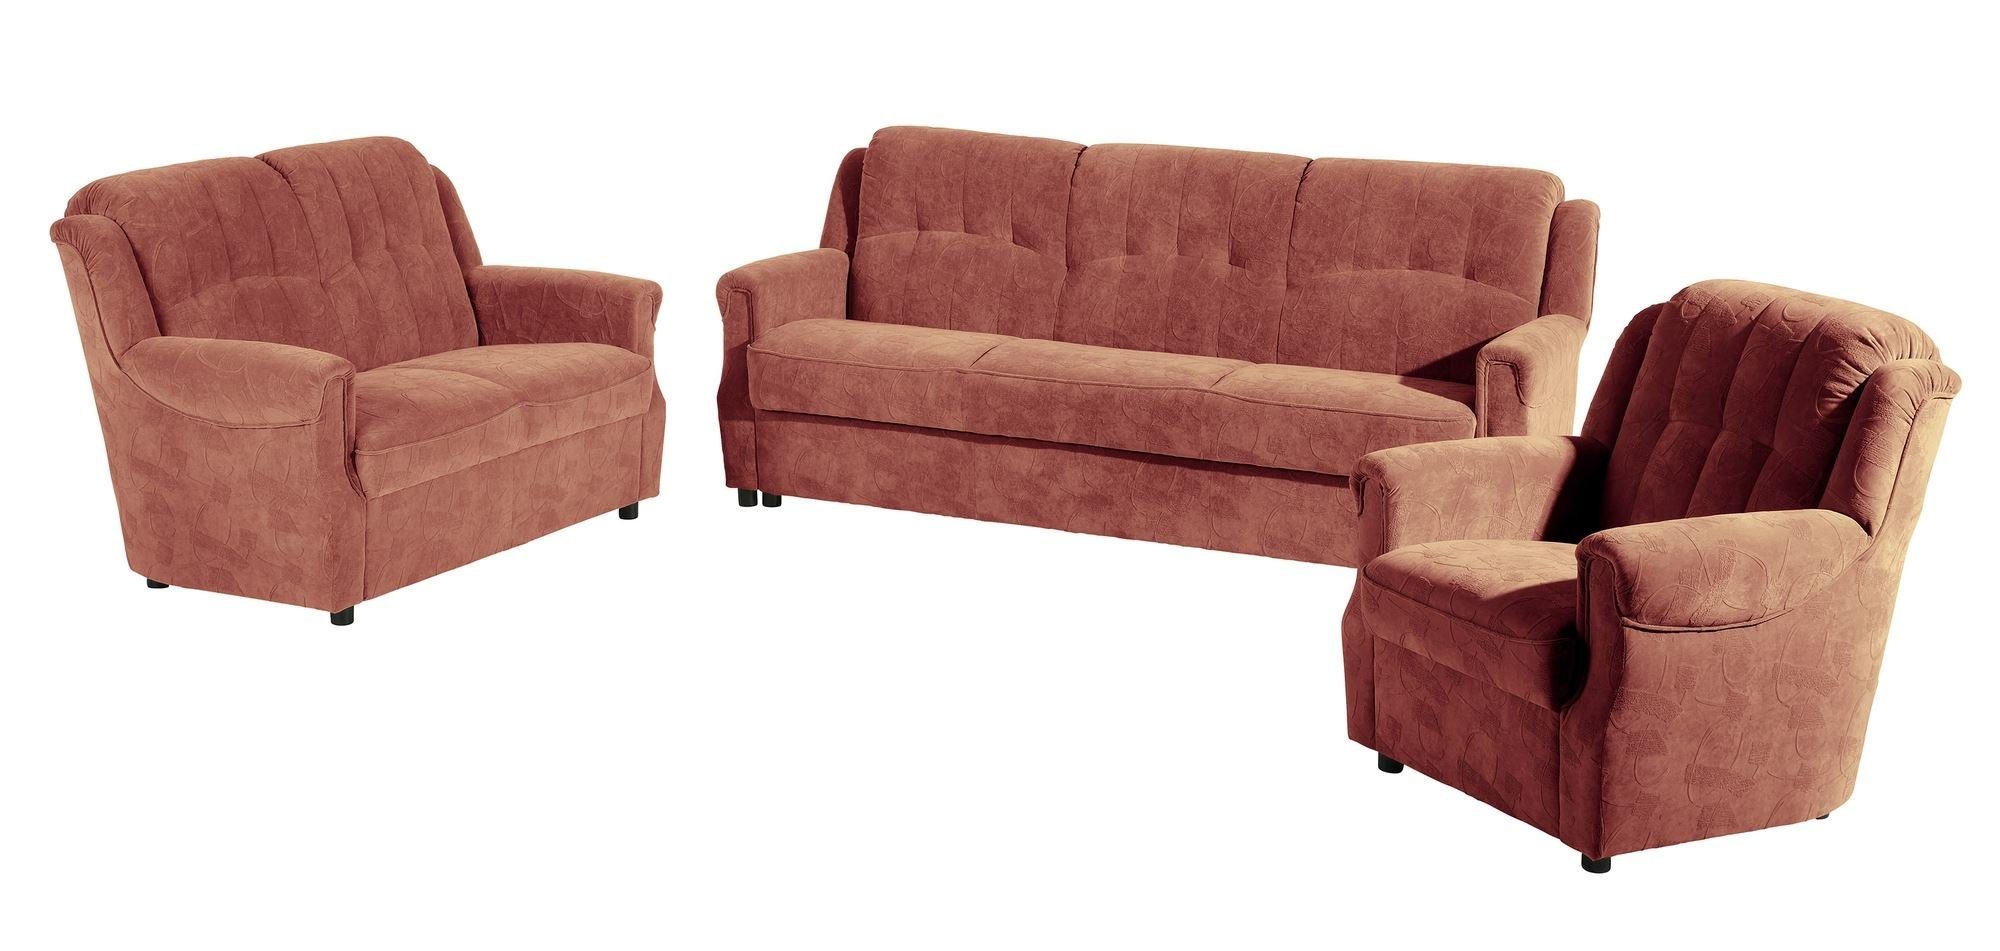 58 aufm hochwertig Sofa Microfaser Kostenlosem Sofa Versand Kuntstoff, Teile, inkl. Karuna Sparpreis Kessel 2-Sitzer Sitz 1 verarbeitet,bequemer Bezug